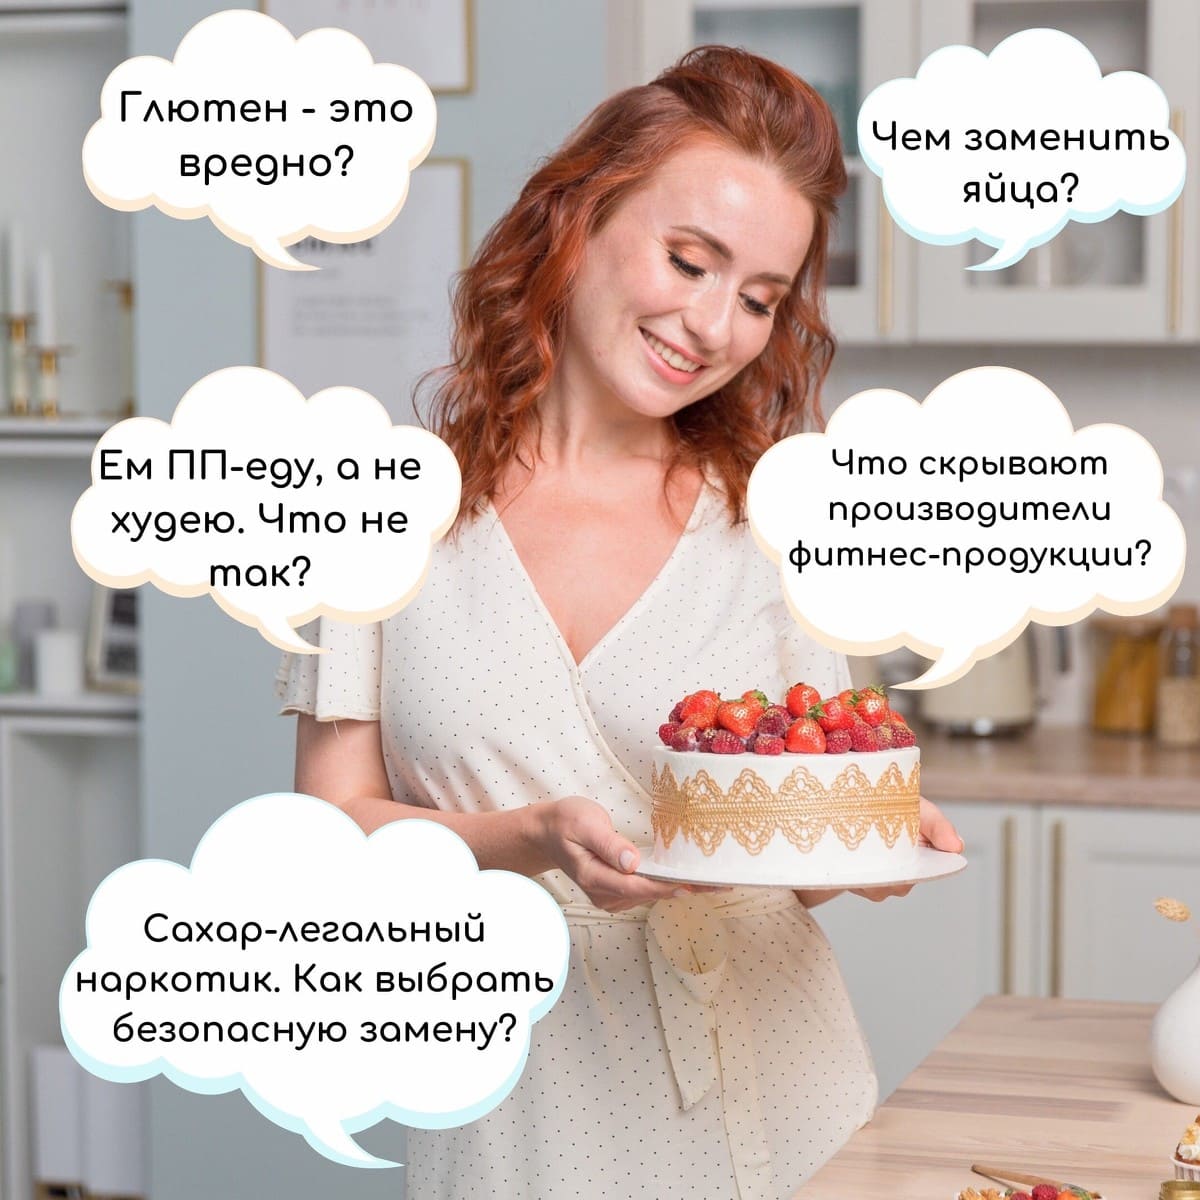 Скачать - Таша Коробейникова - Сакральные знания о диетических десертах (2020).jpg